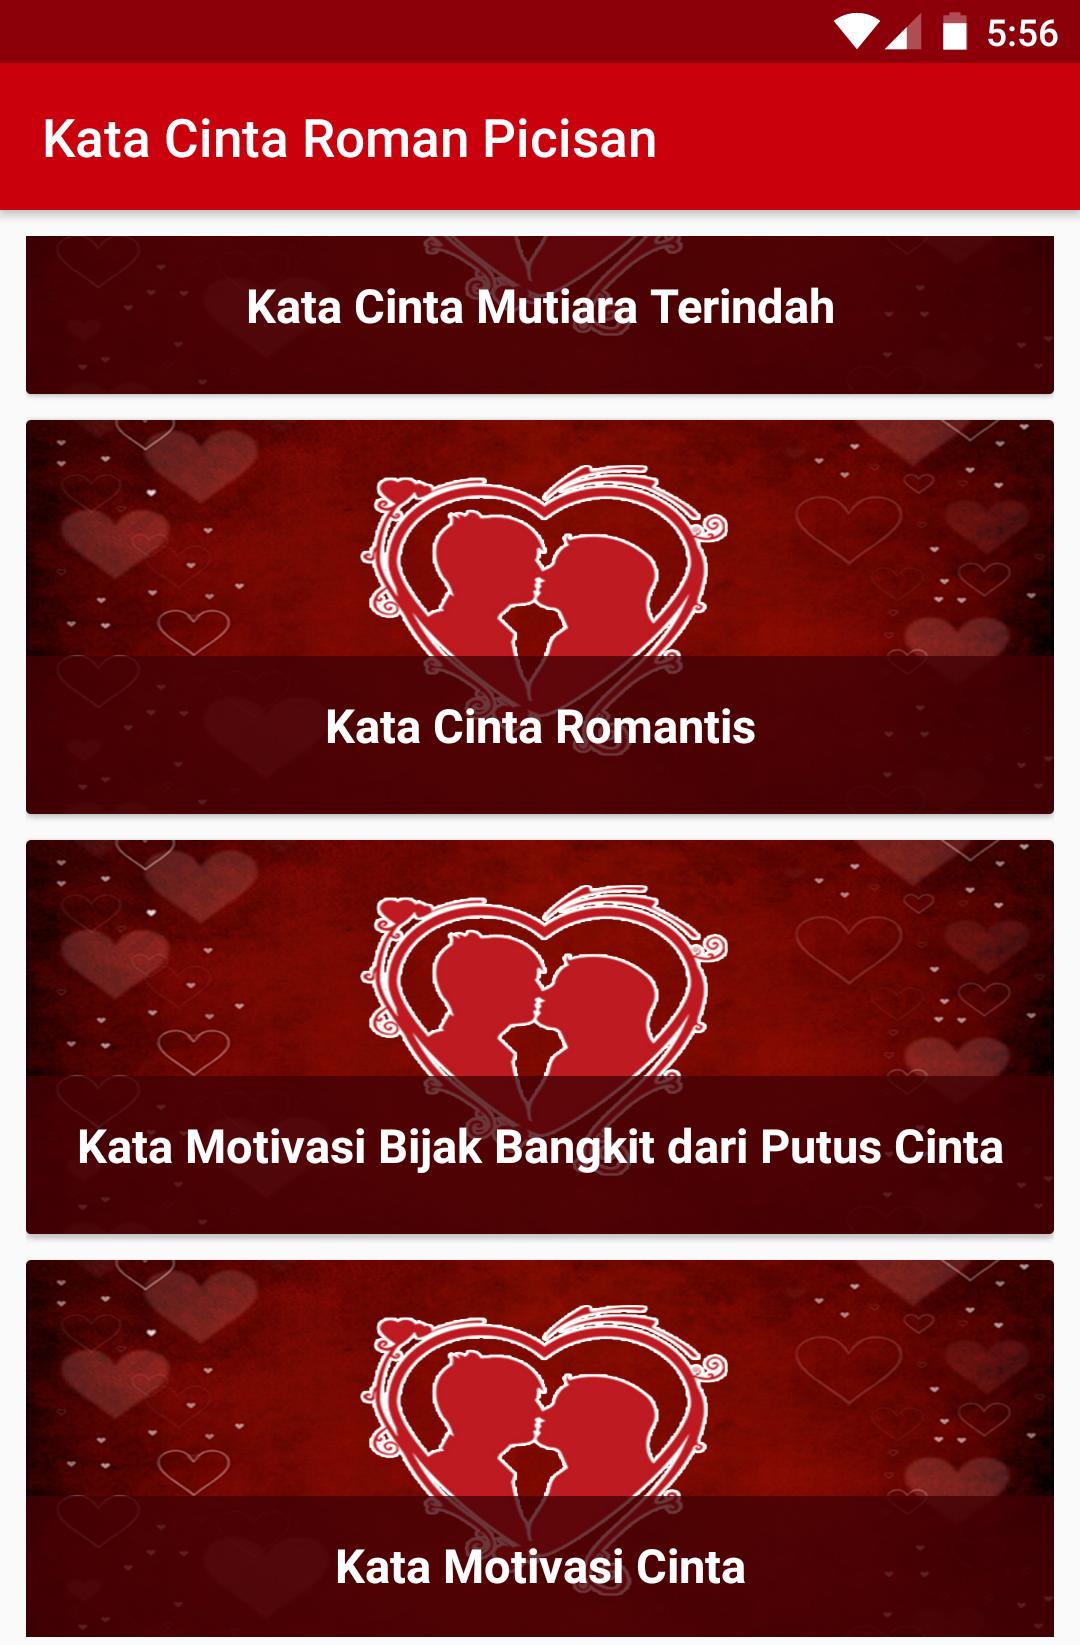 Kata Kata Cinta Roman Picisan For Android Apk Download